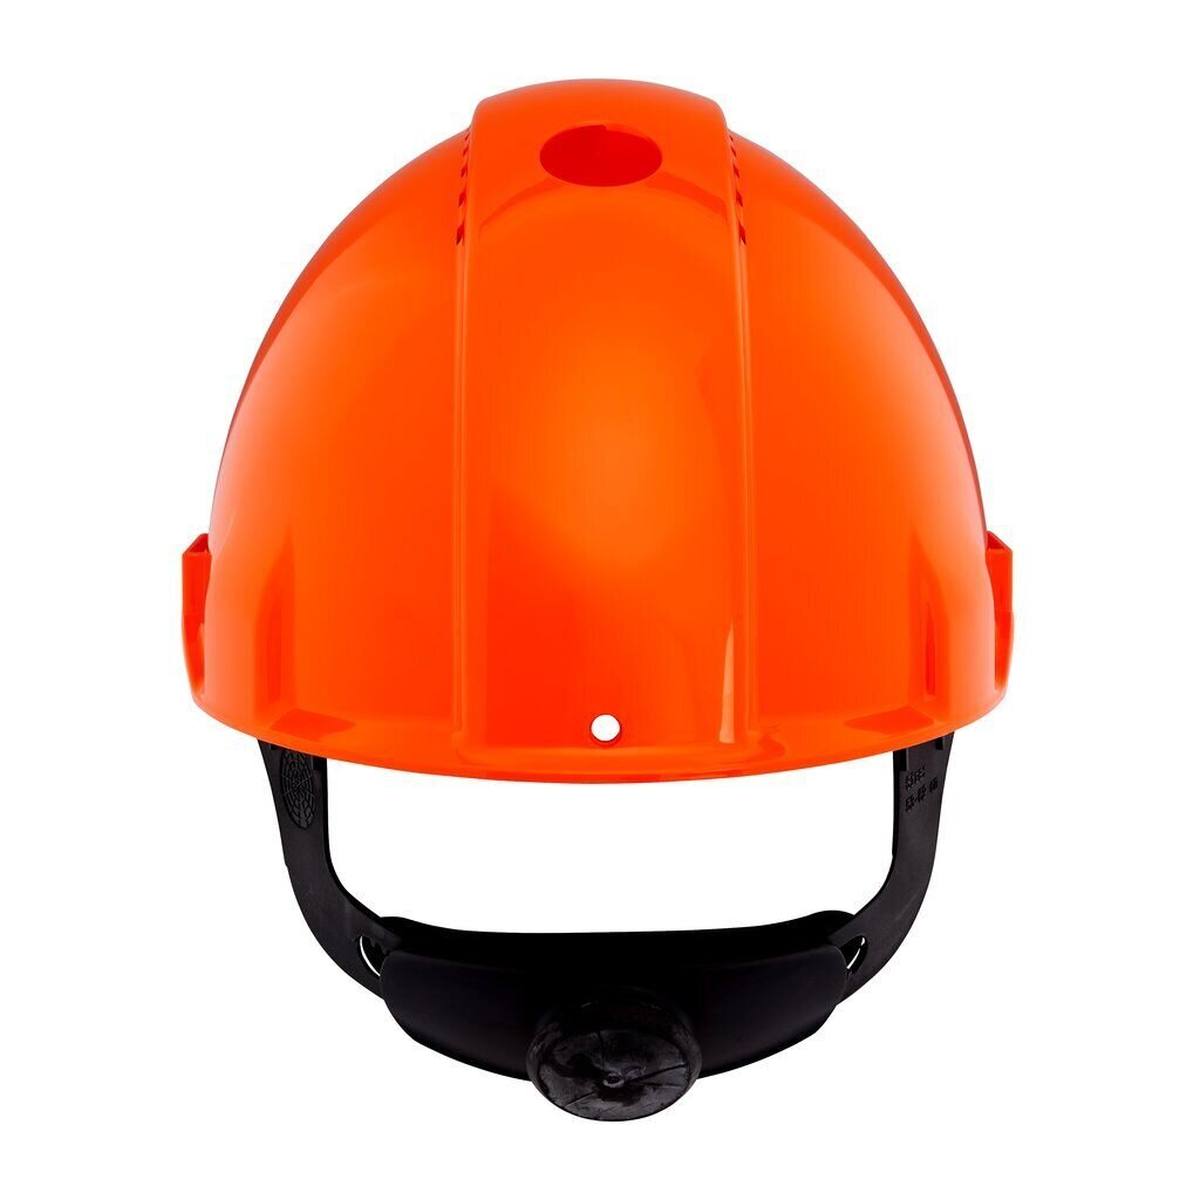 3M Casco de seguridad G3000 G30NUO de color naranja, ventilado, con uvicator, trinquete y correa de soldadura de plástico